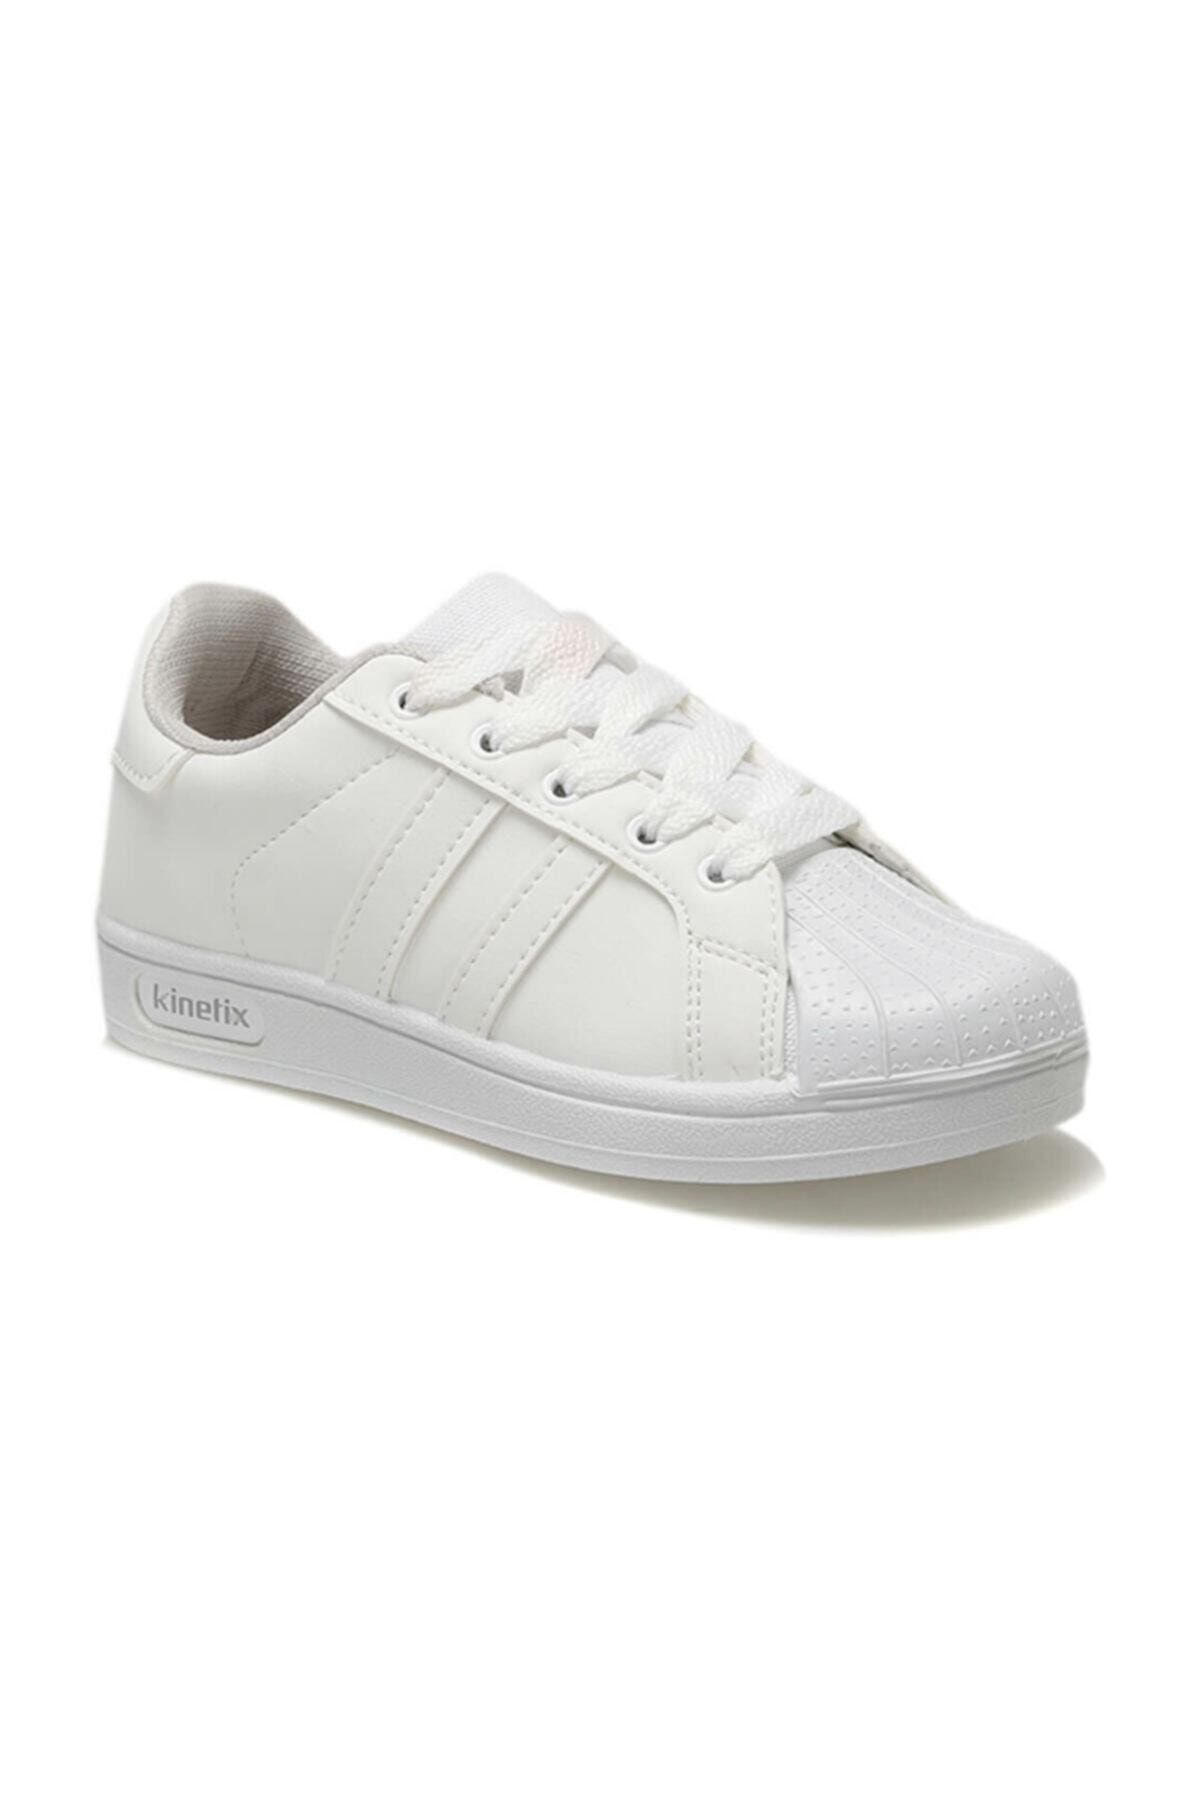 Kinetix RENDRO Beyaz Erkek Çocuk Sneaker Ayakkabı 100314523